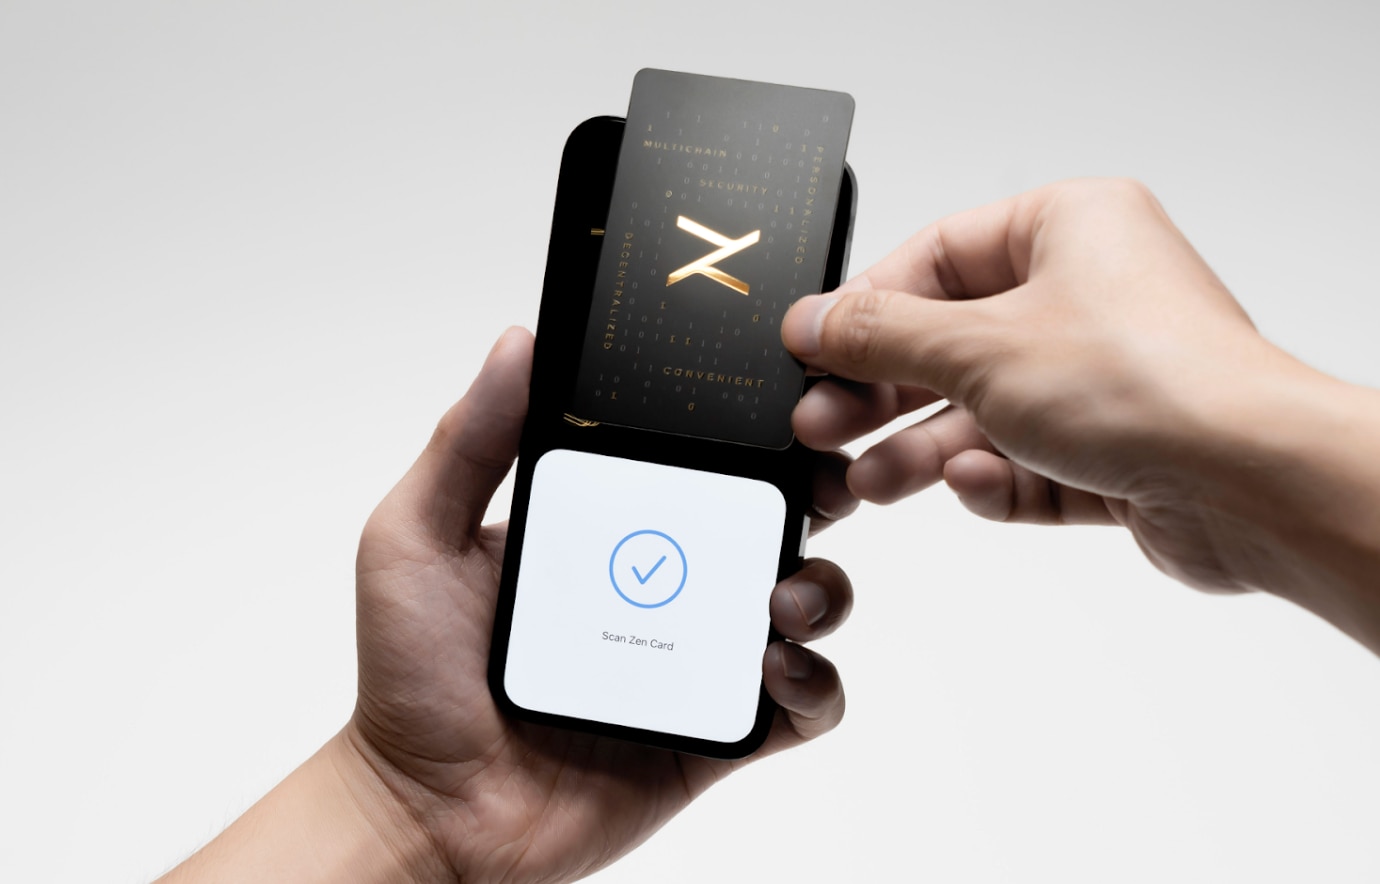 يقوم المستخدمون بمسح بطاقة Zen Card على هواتفهم لتوقيع المعاملات